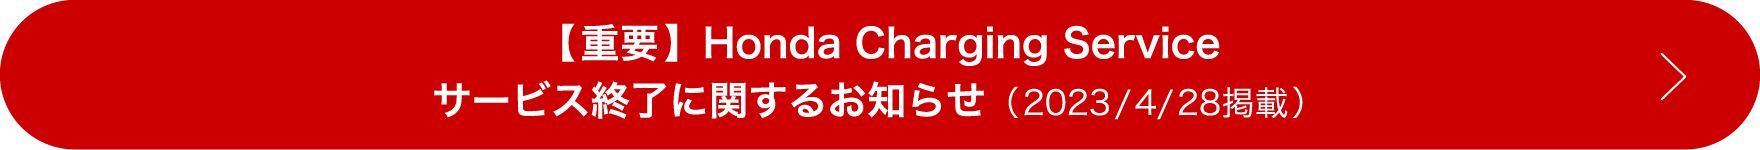 【重要】 Honda Charging Serviceサービス終了に関するお知らせ (2023/4/28掲載)